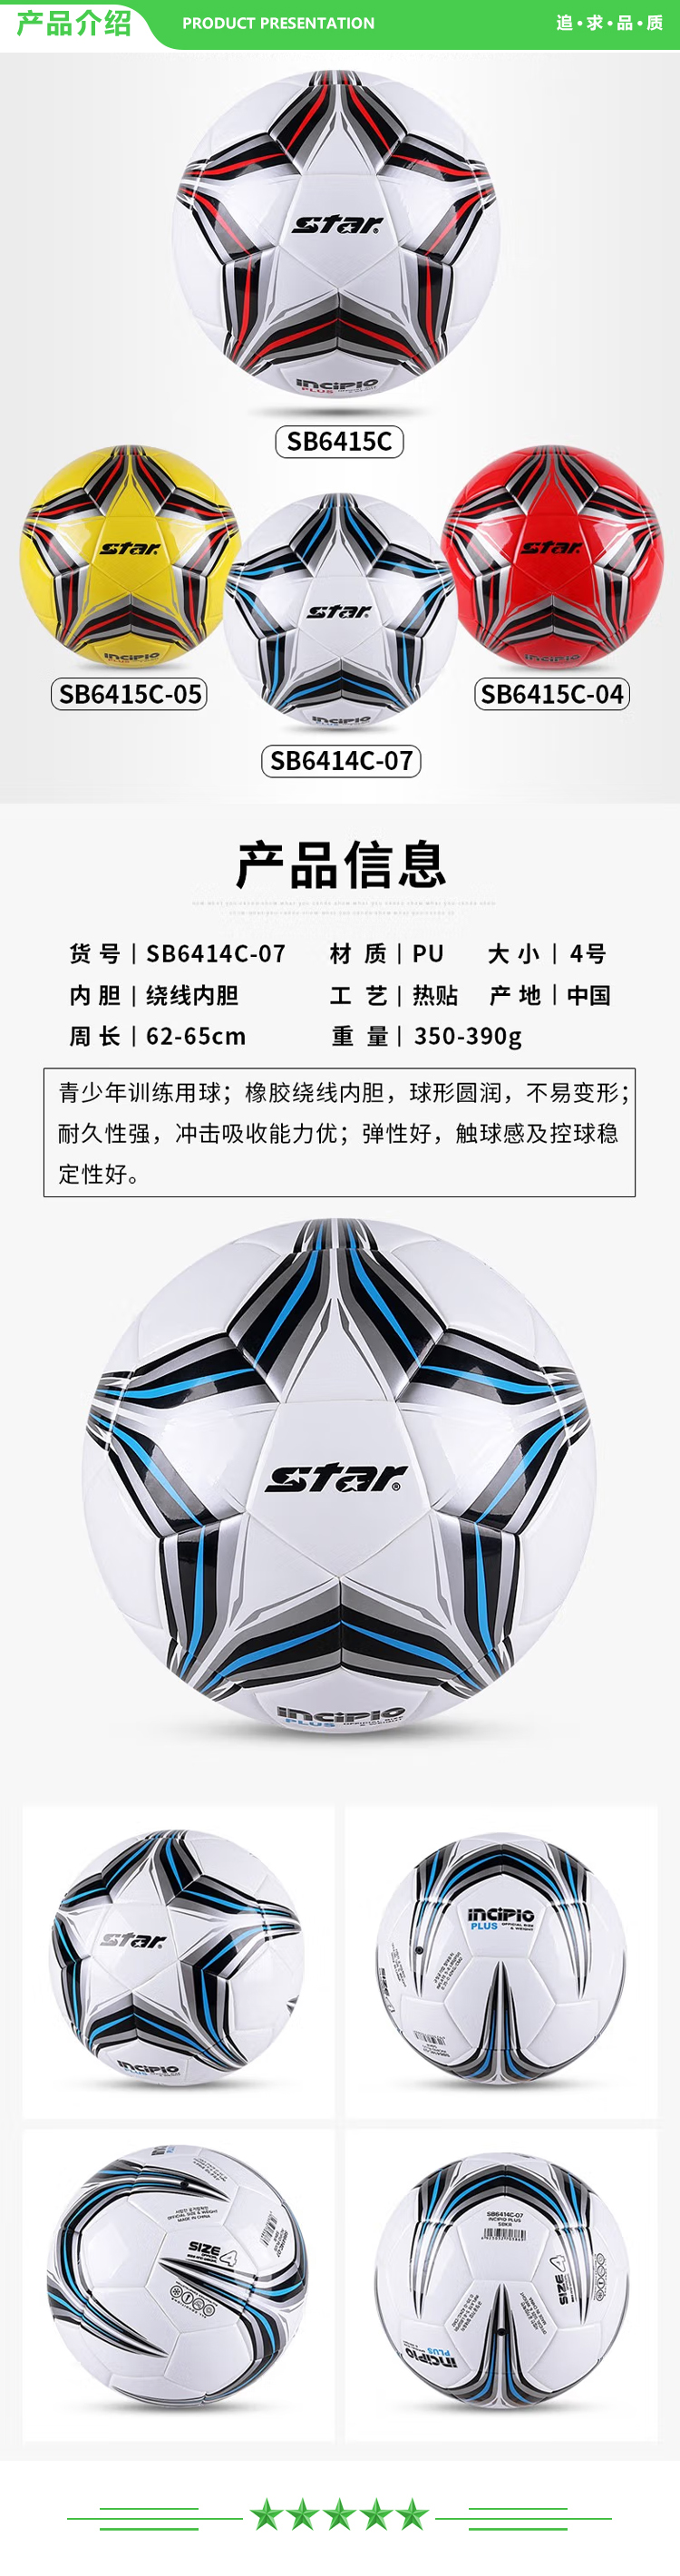 世达 star SB6414-07（4号小学生 5人制场地使用）足球 4号中学生儿童青少年训练比赛用球稳定耐磨.jpg